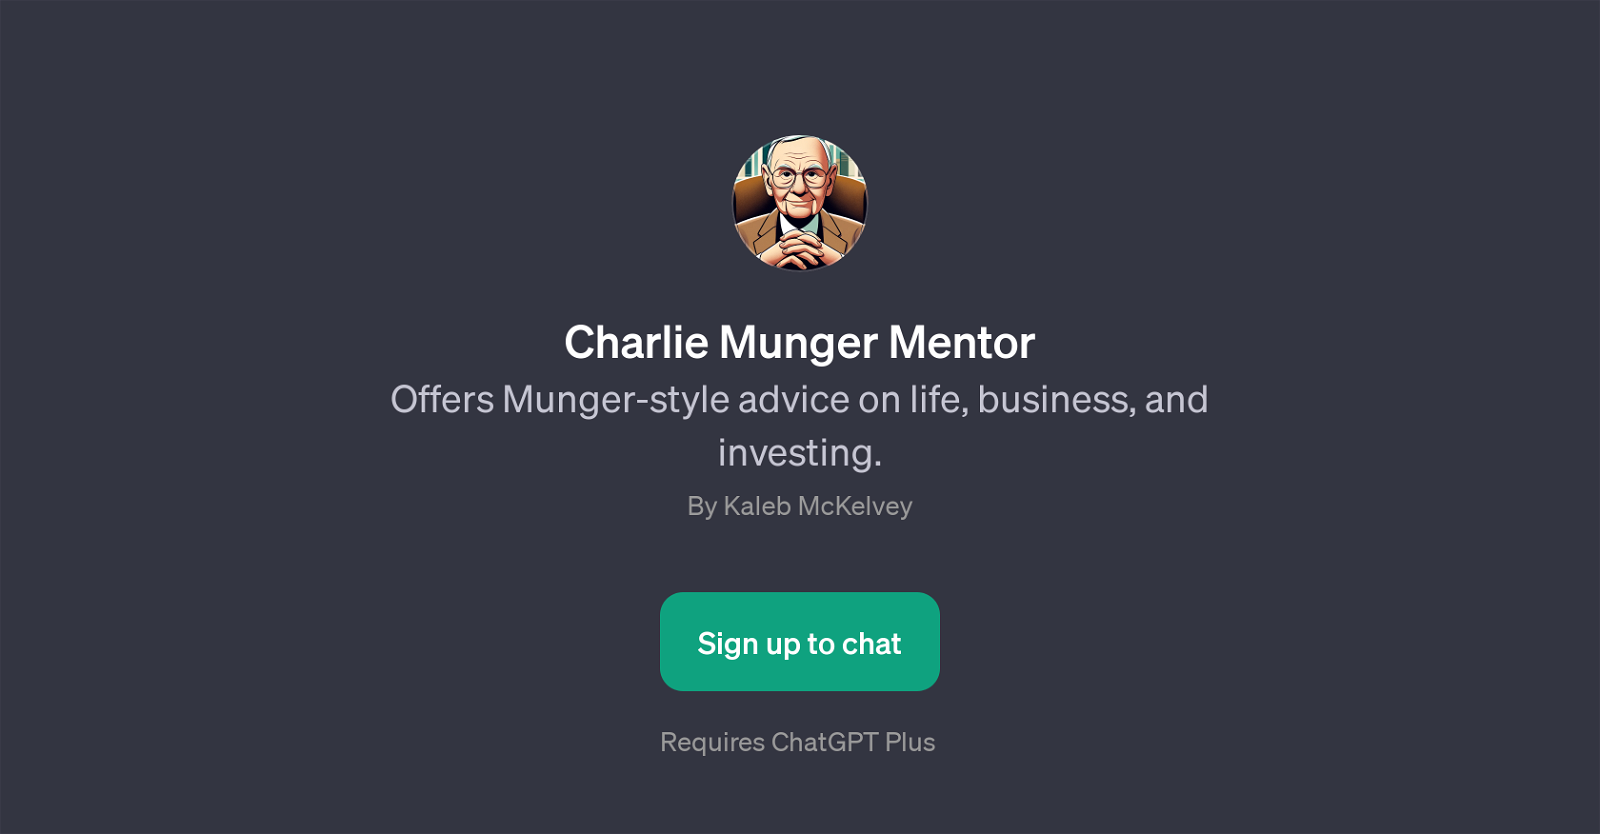 Charlie Munger Mentor website